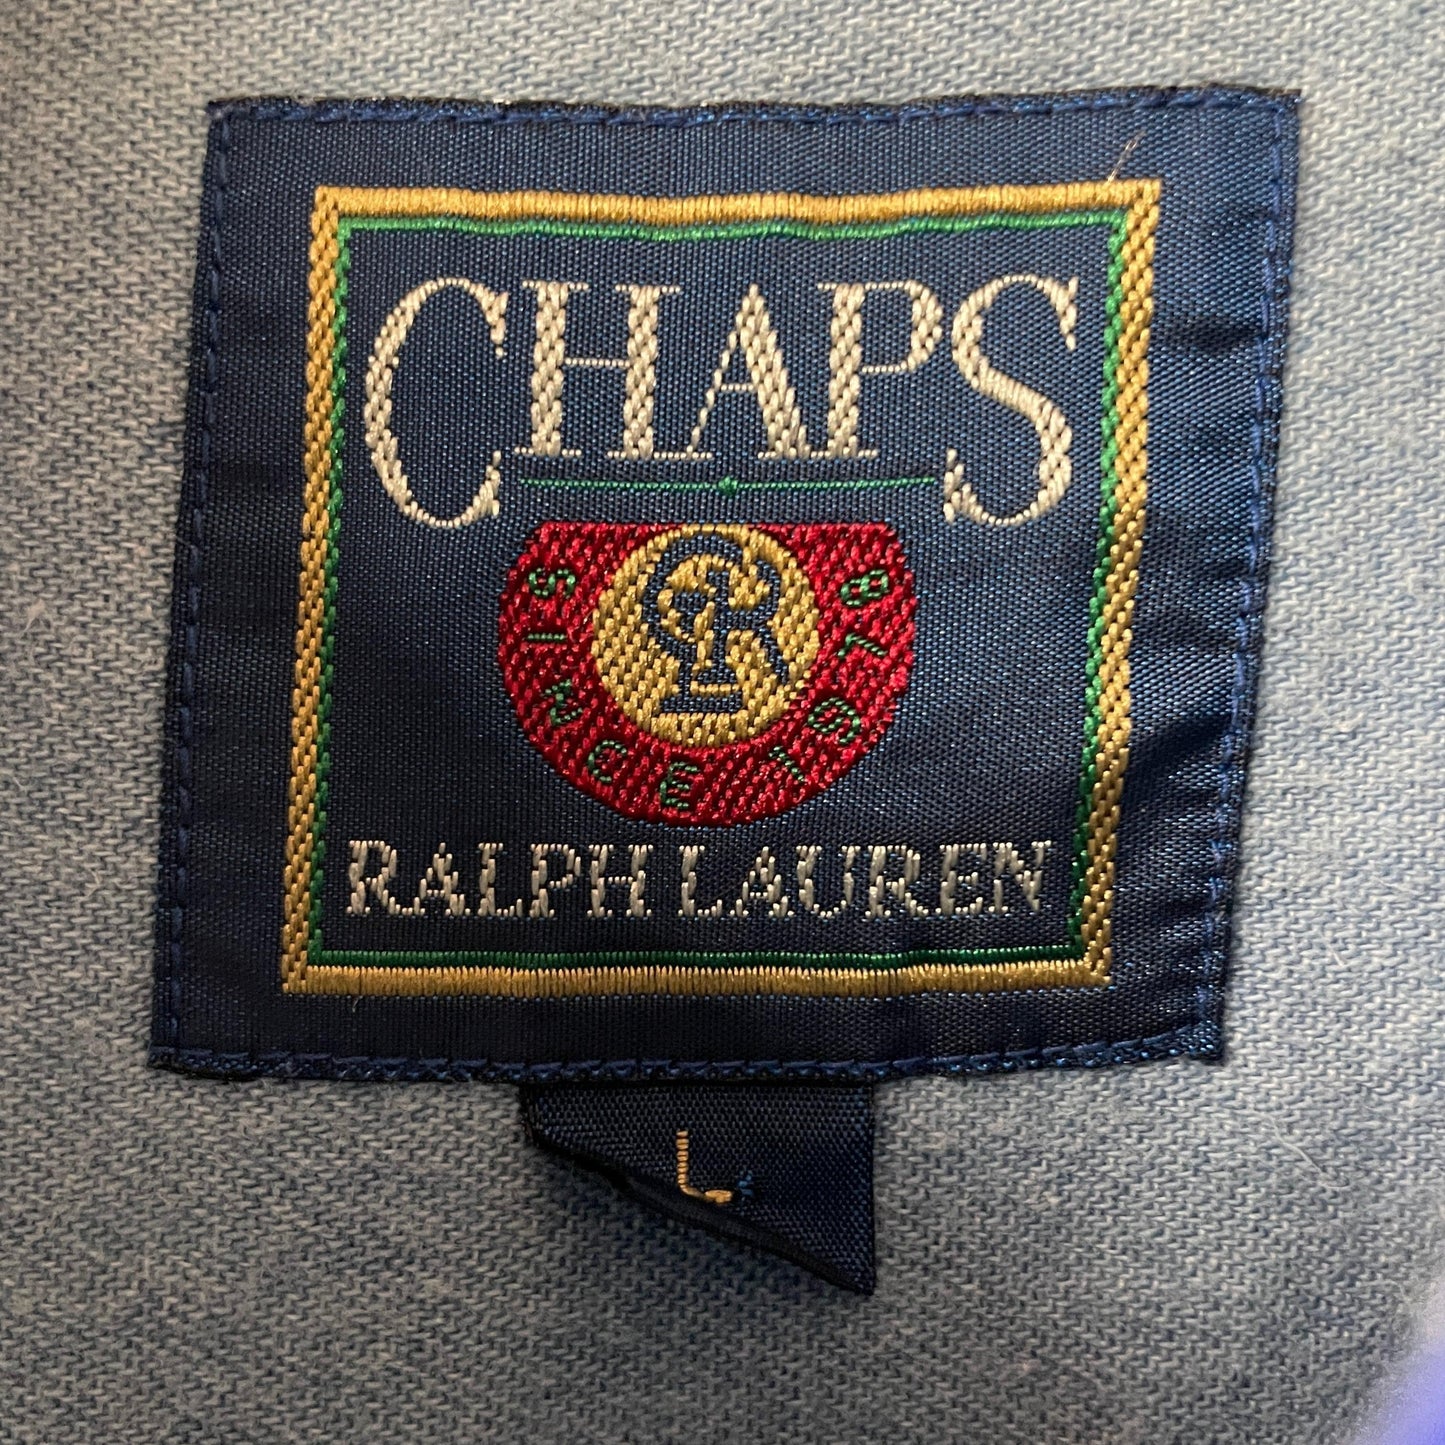 Chaps Ralph Lauren chaps shirt shirt